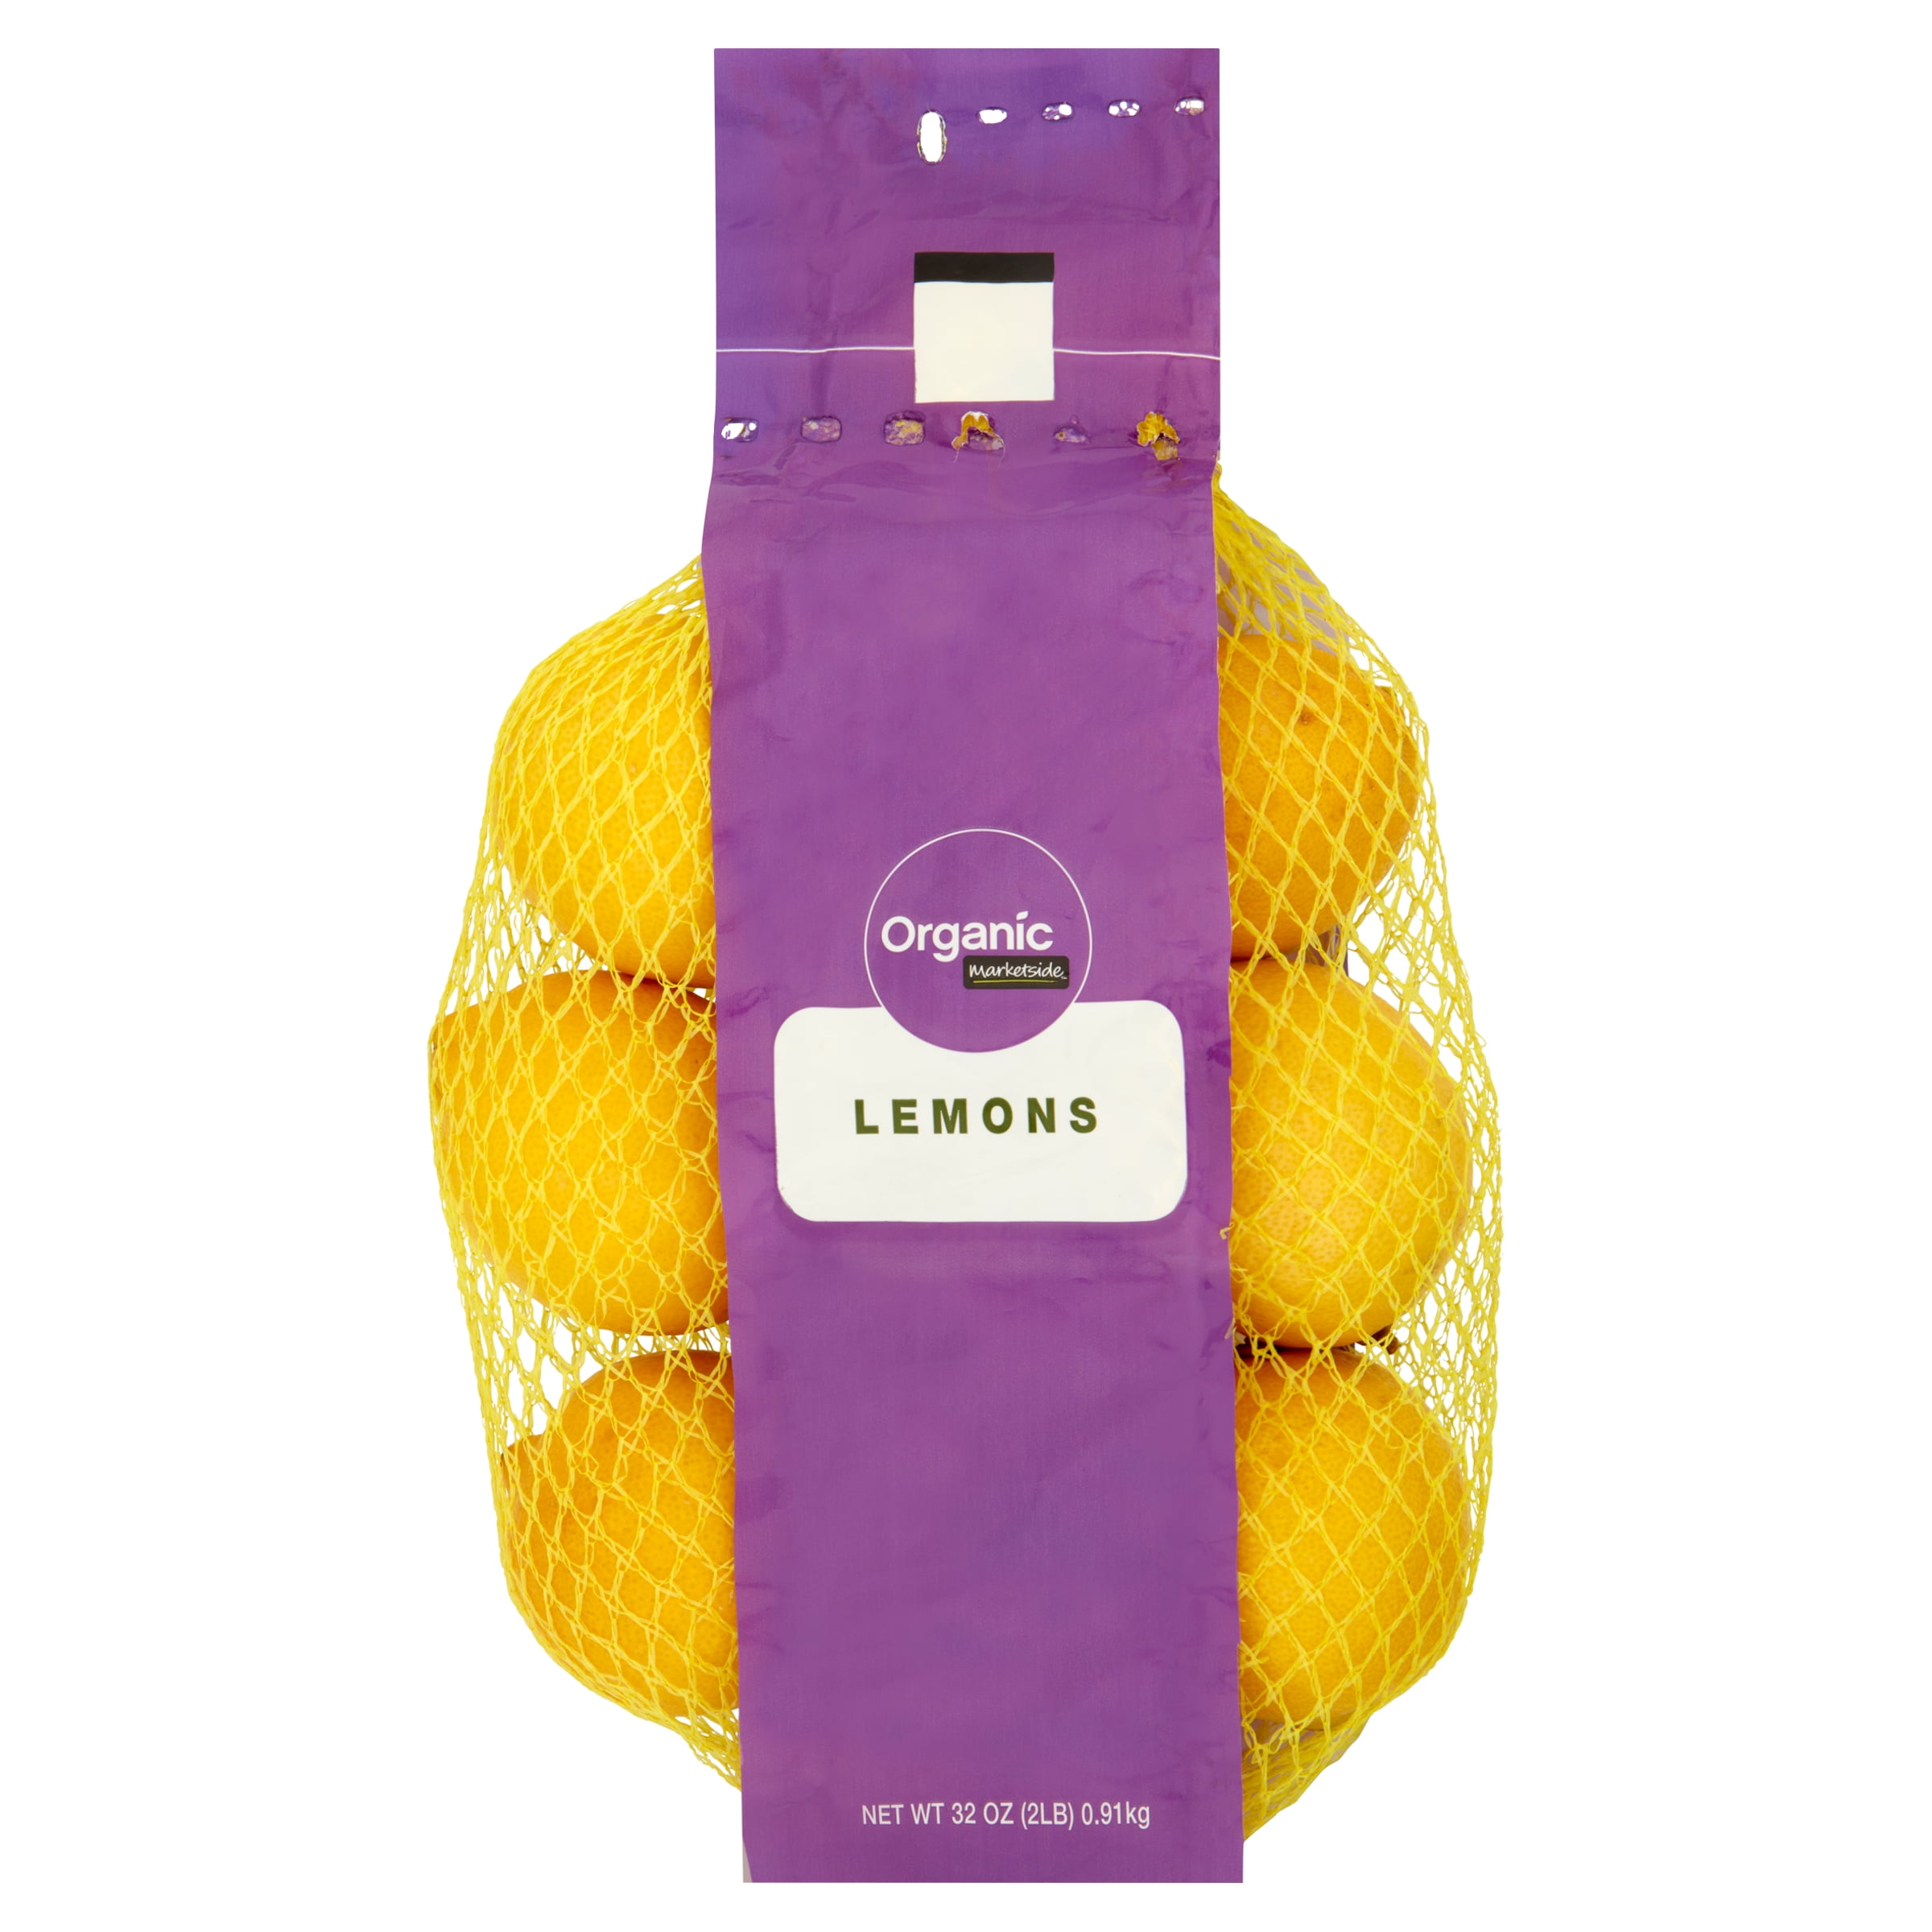 Lemon Fruit Purée 44 Lb bag in box